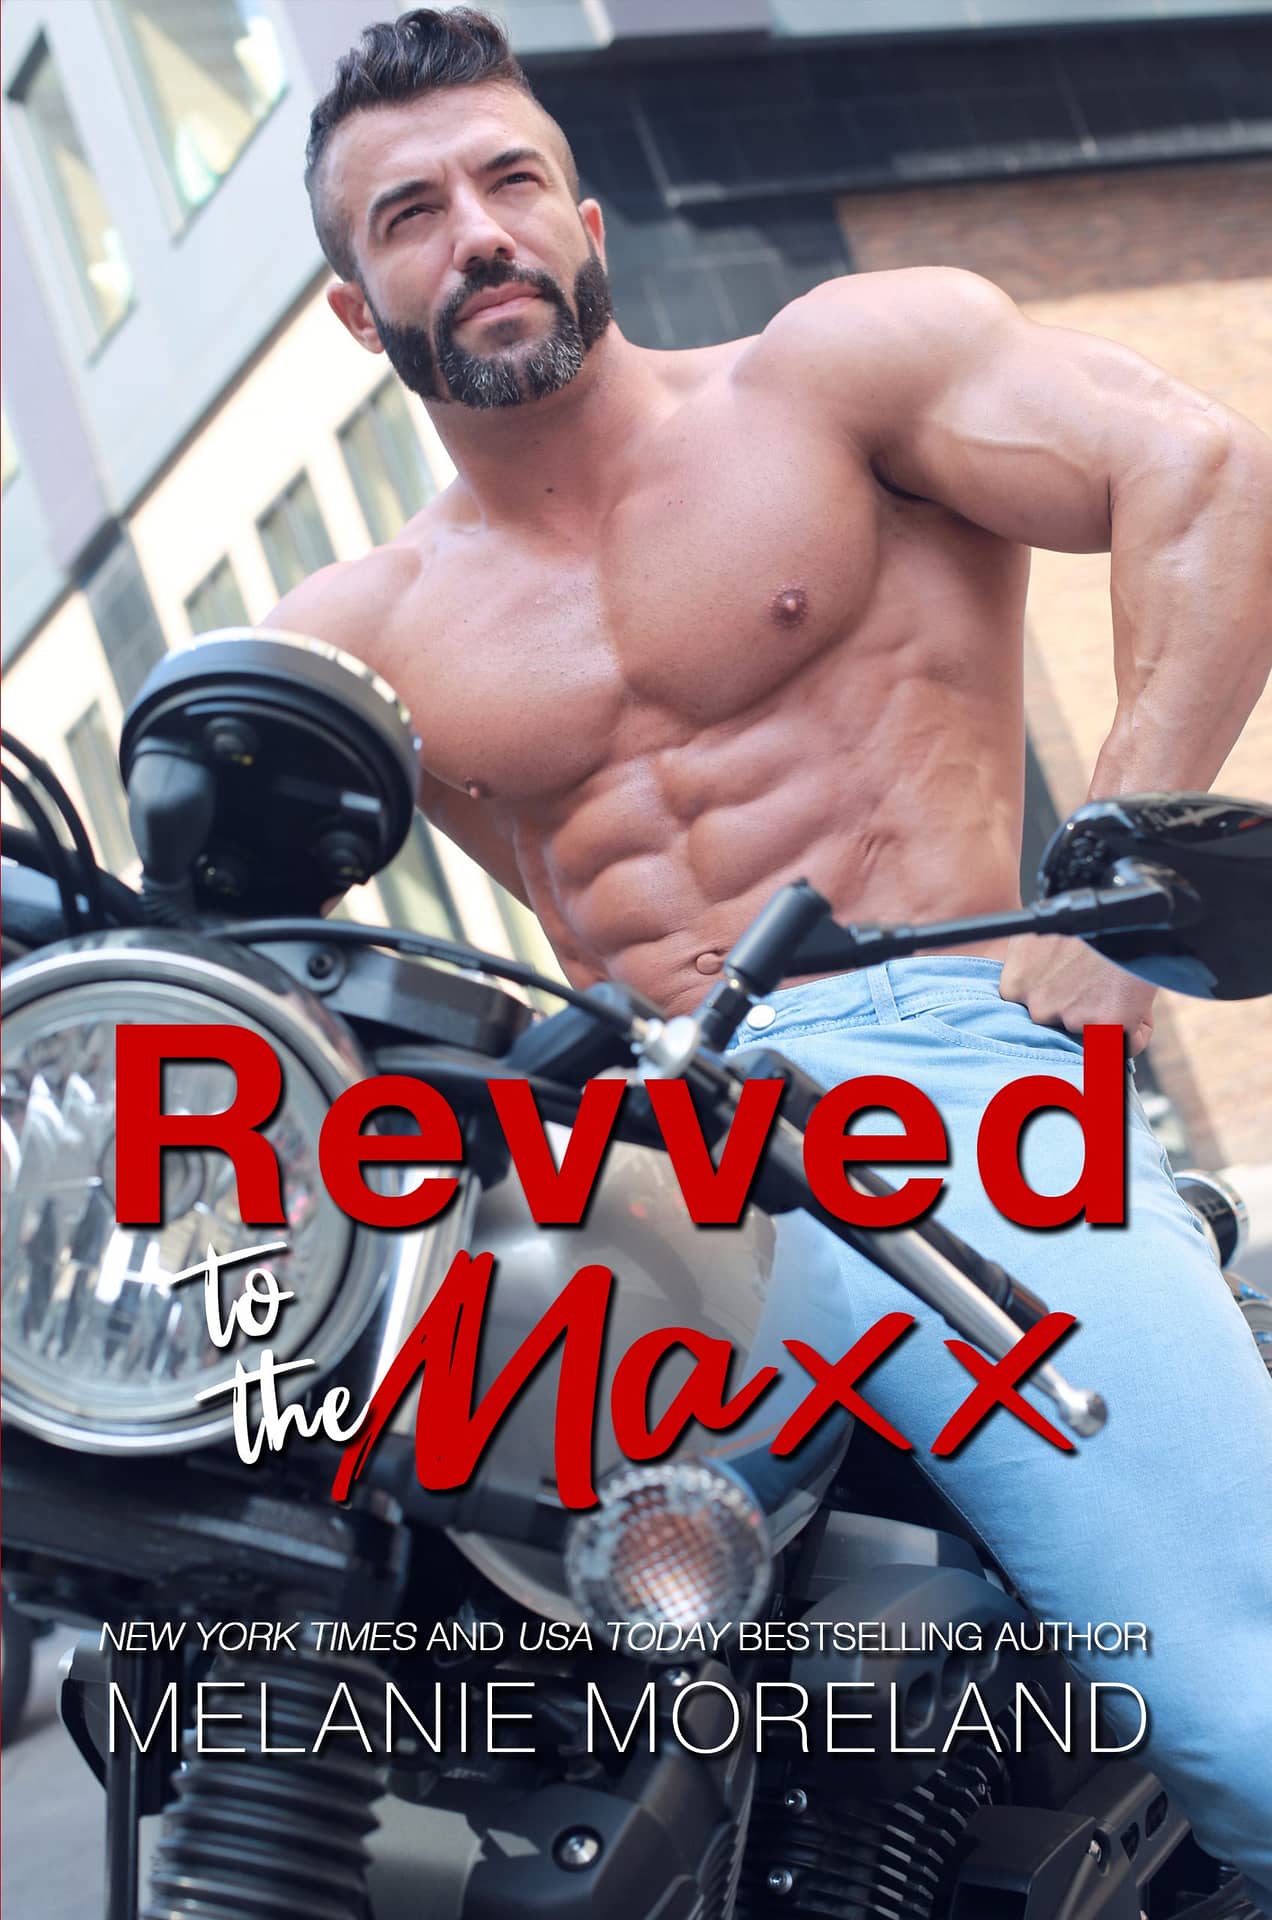 Revved To The Maxx